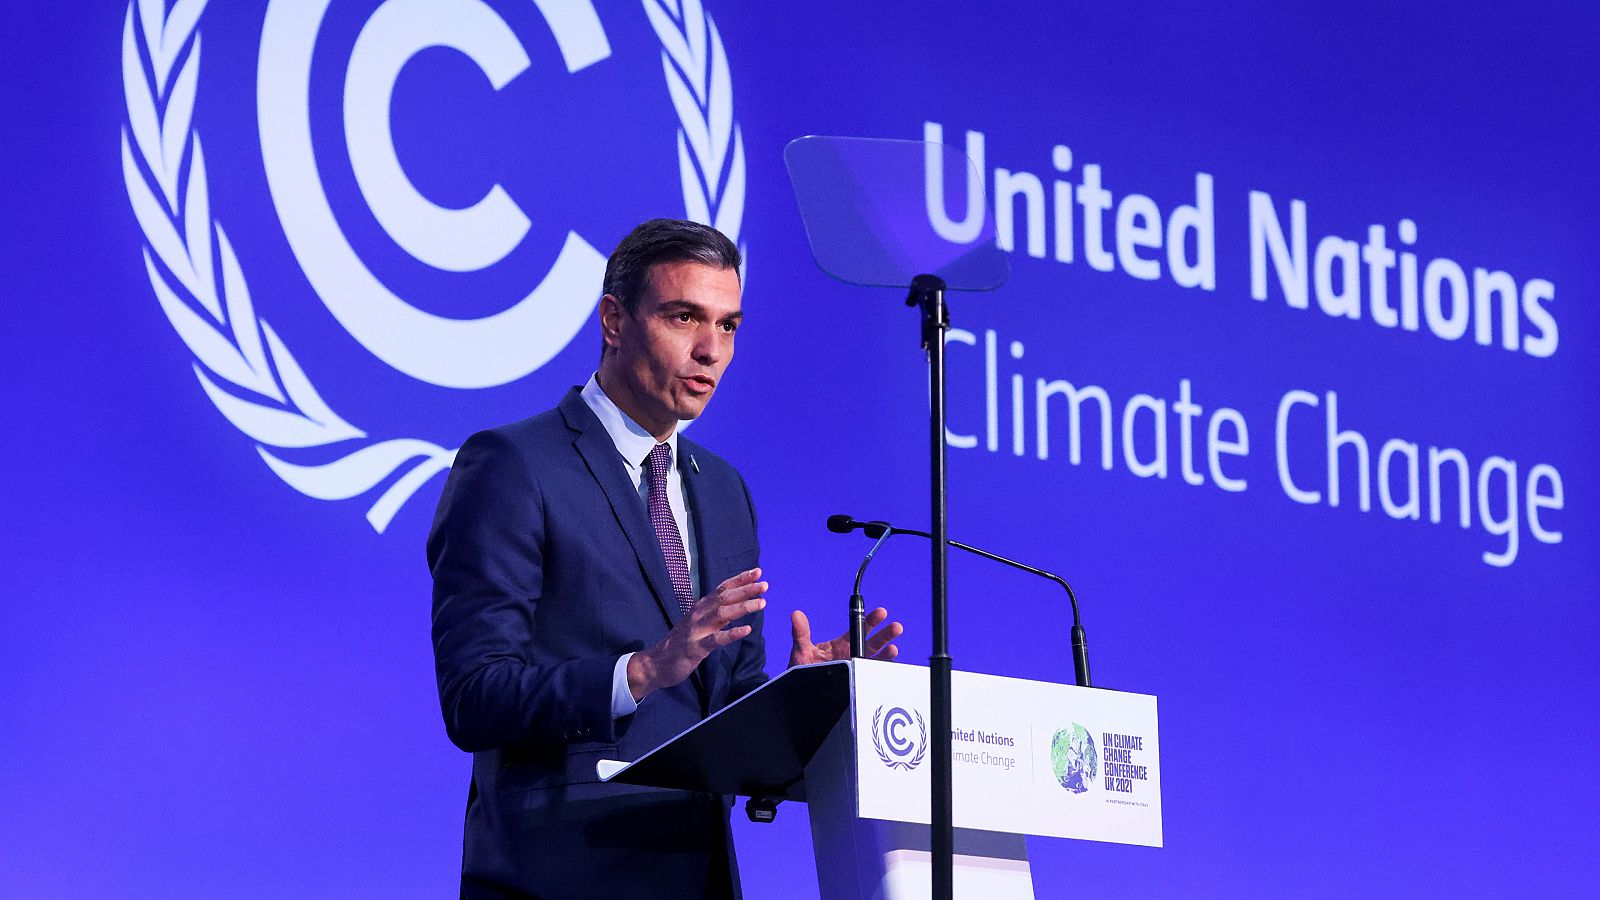 Boletines RNE - Sánchez anuncia más dinero para el fondo del clima y pide que la COP26 sea "un punto de inflexión" - Escuchar ahora